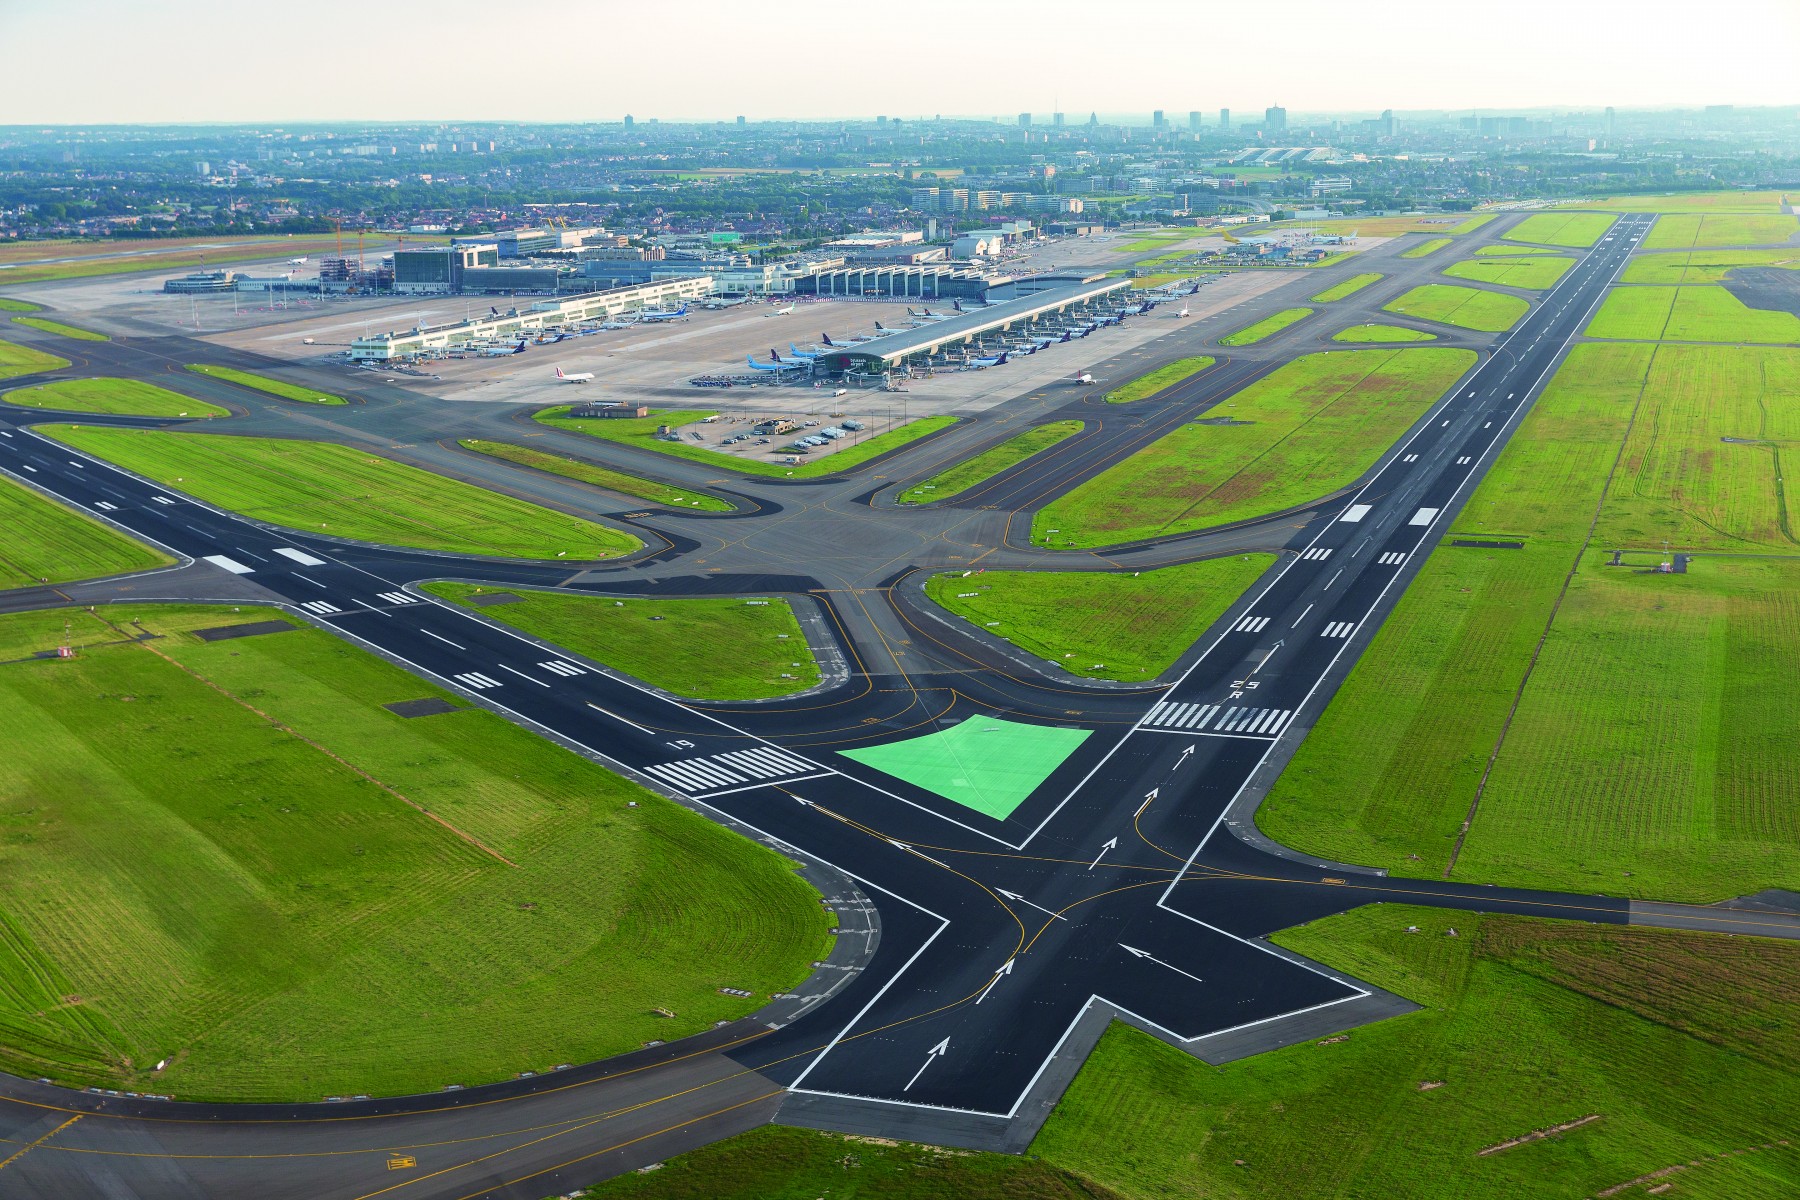 Brüsseli lennujaam korraldab kohalikele elanikele teabetunni loa uuendamise taotluse ja keskkonnamõju hindamise eelnõude kohta